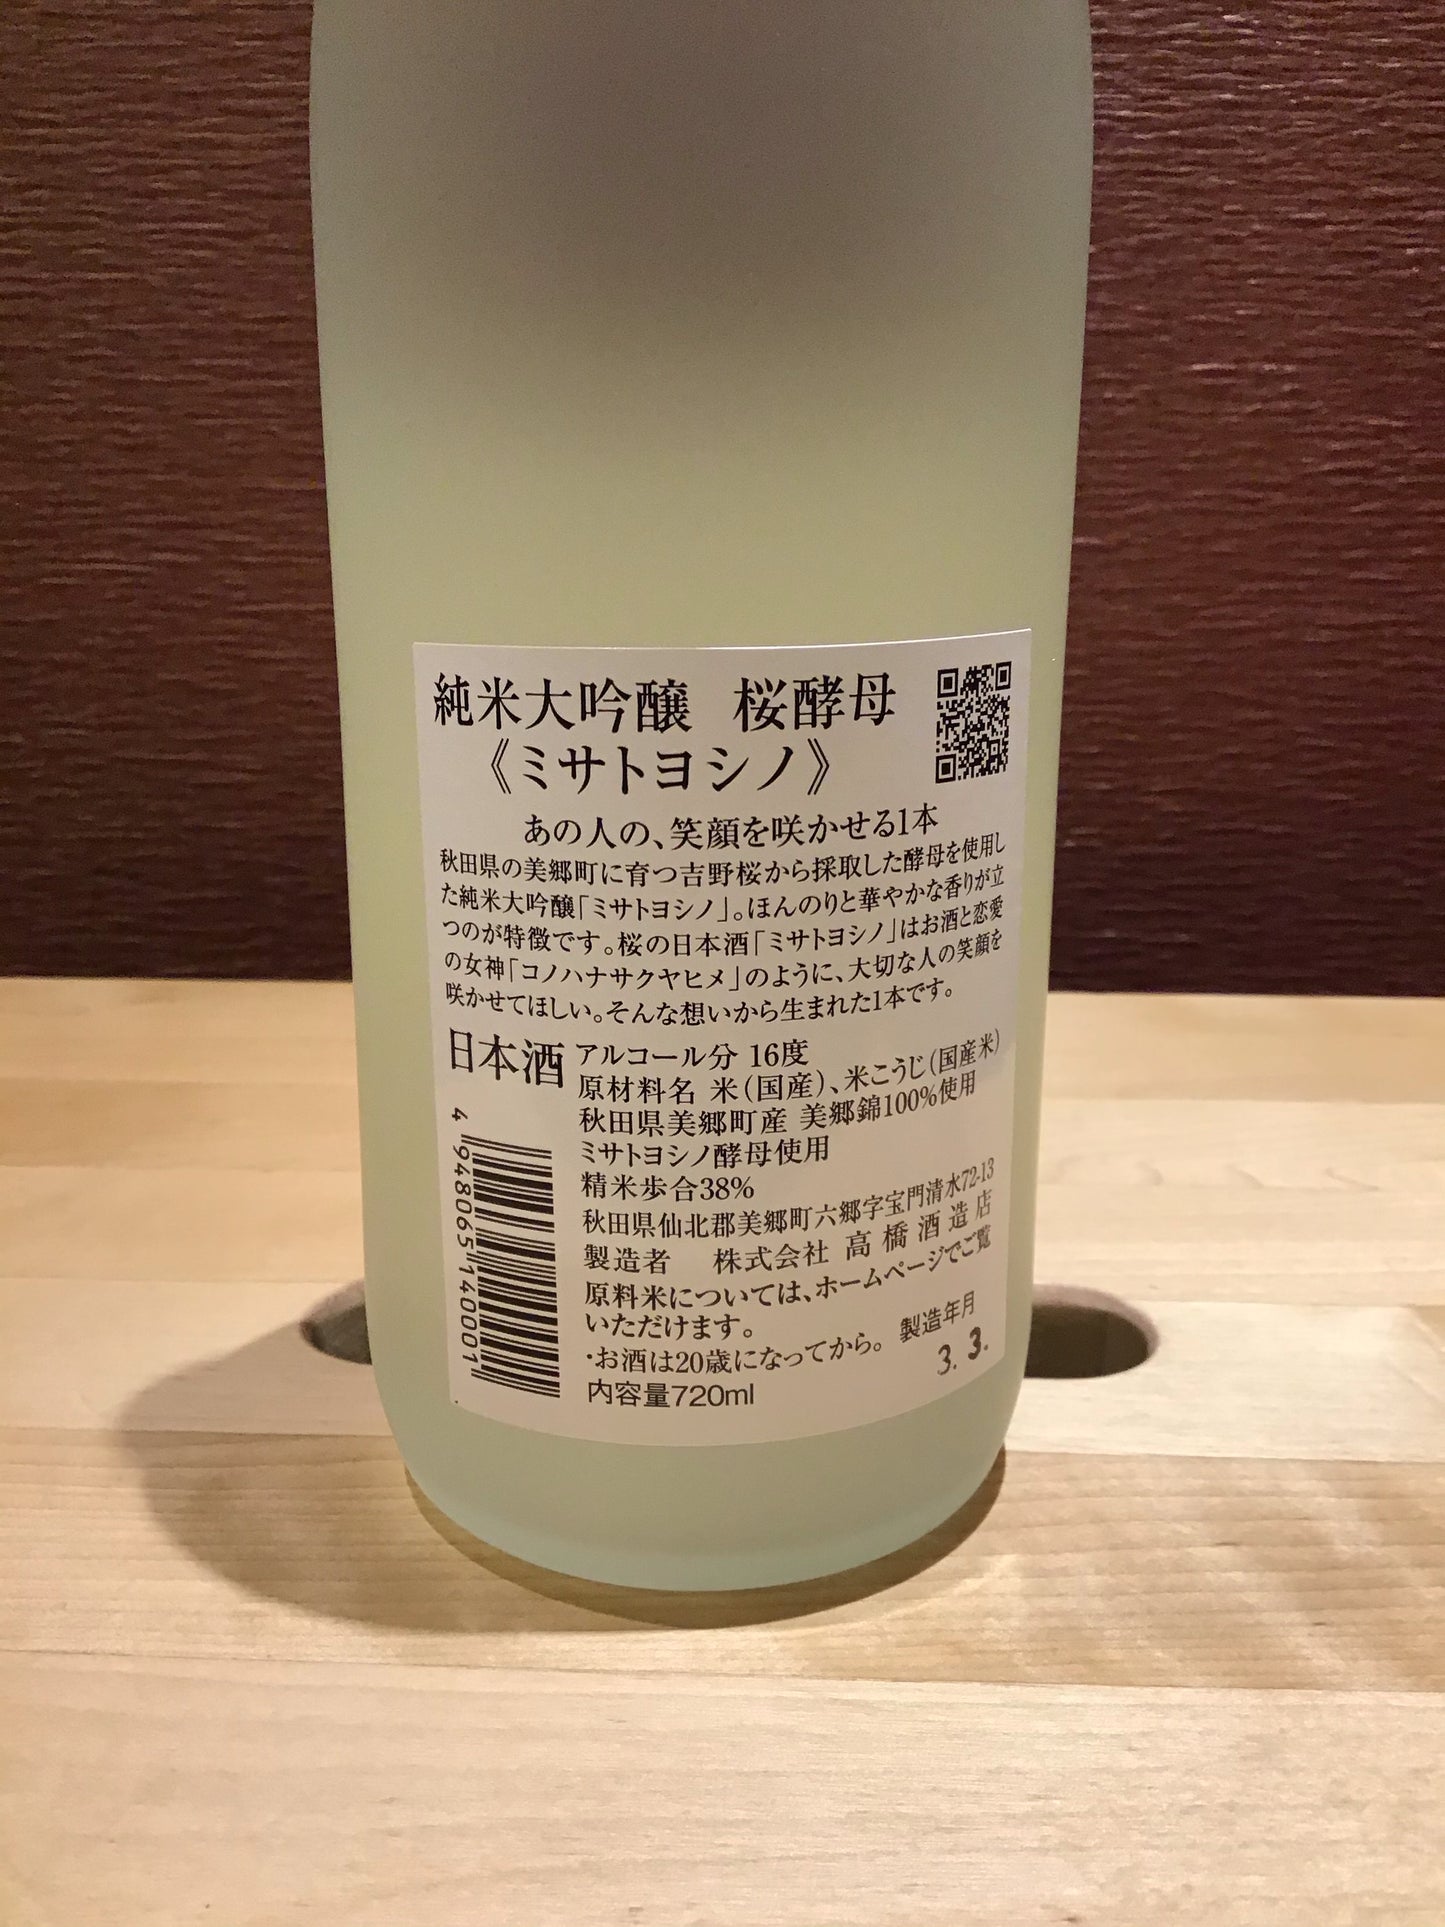 ミサトヨシノ 桜酵母 純米大吟醸 720ml